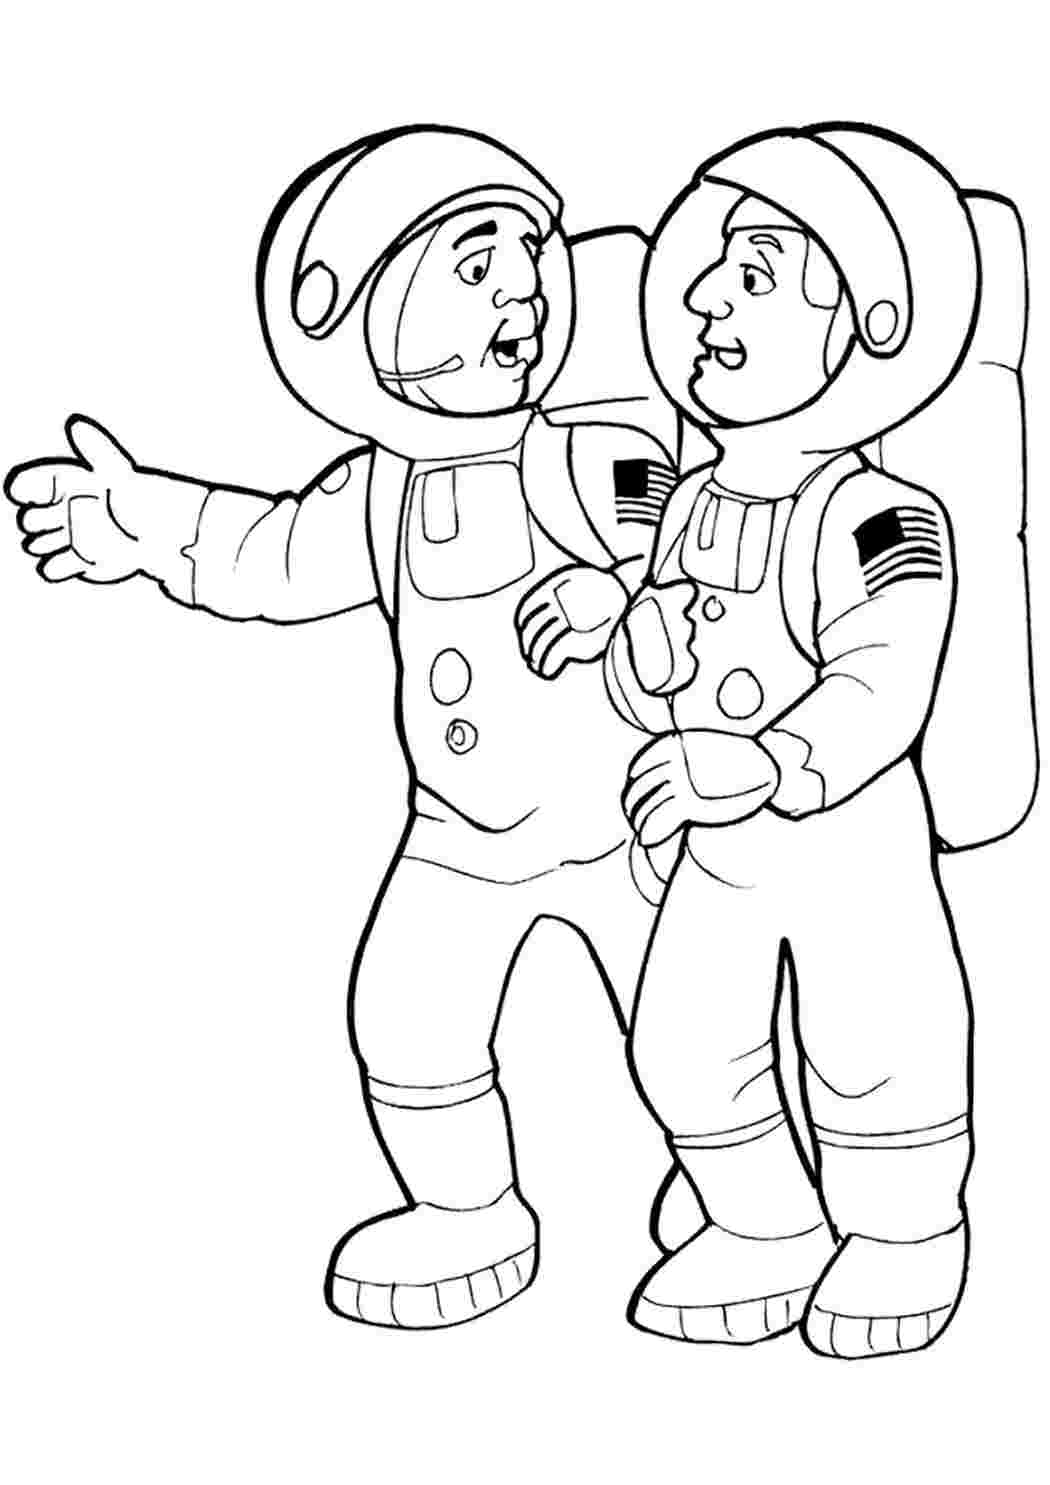 Как разукрасить космонавта. Космонавт раскраска. Космонавт раскраска для детей. Космонавт раскраска для малышей. Космонавтика раскраски для детей.